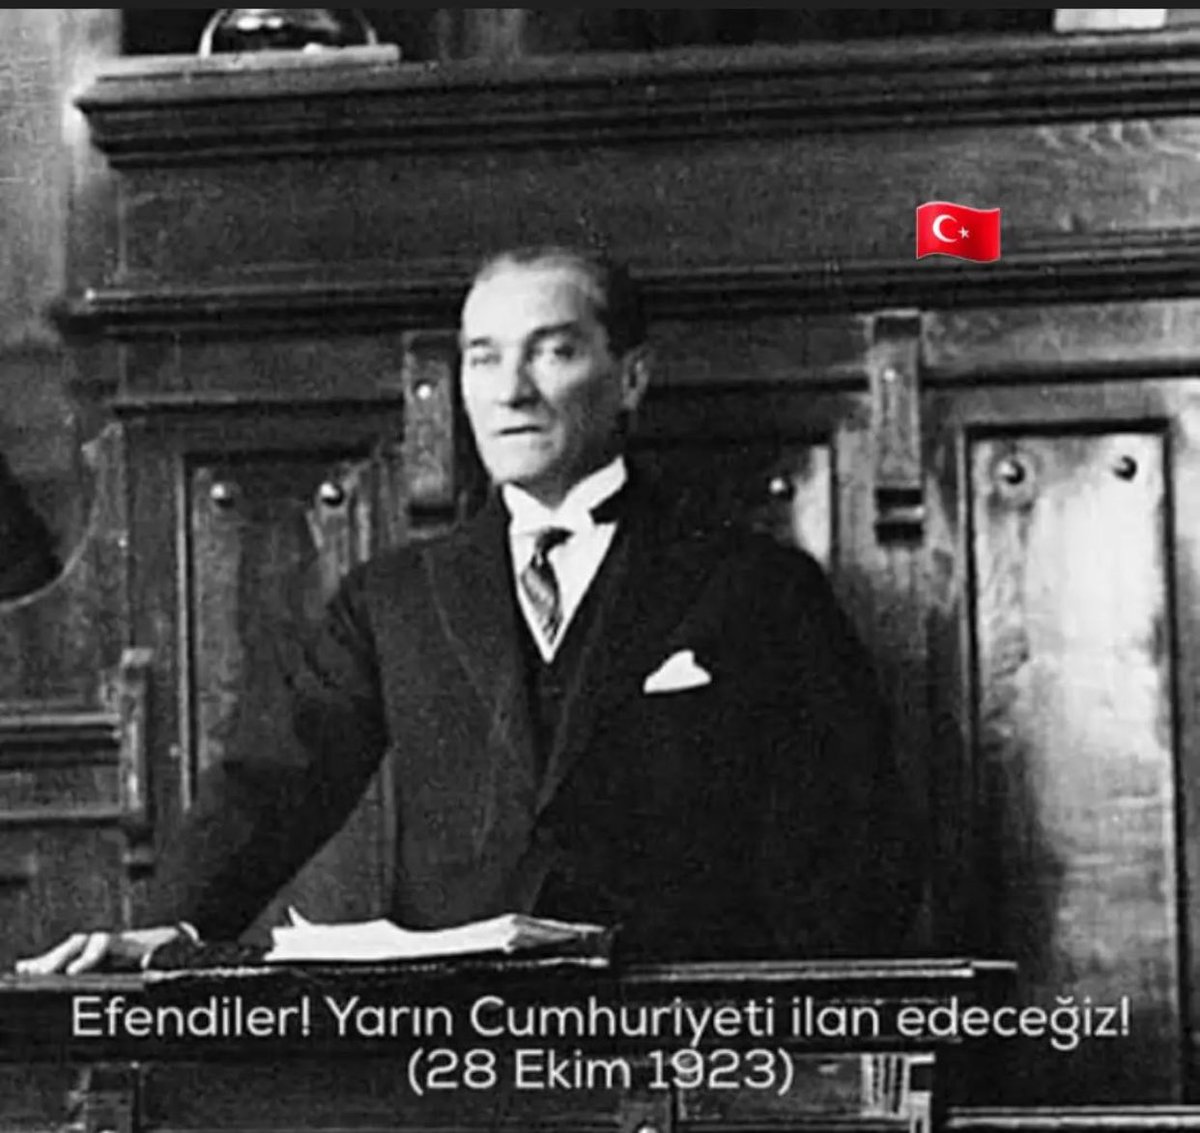 En büyük bayramımız ❤️❤️❤️❤️🇹🇷🇹🇷🇹🇷🇹🇷
#29EkimCumhuriyetBayramı  
#gerçeklider 
#mustafakemalatatürk